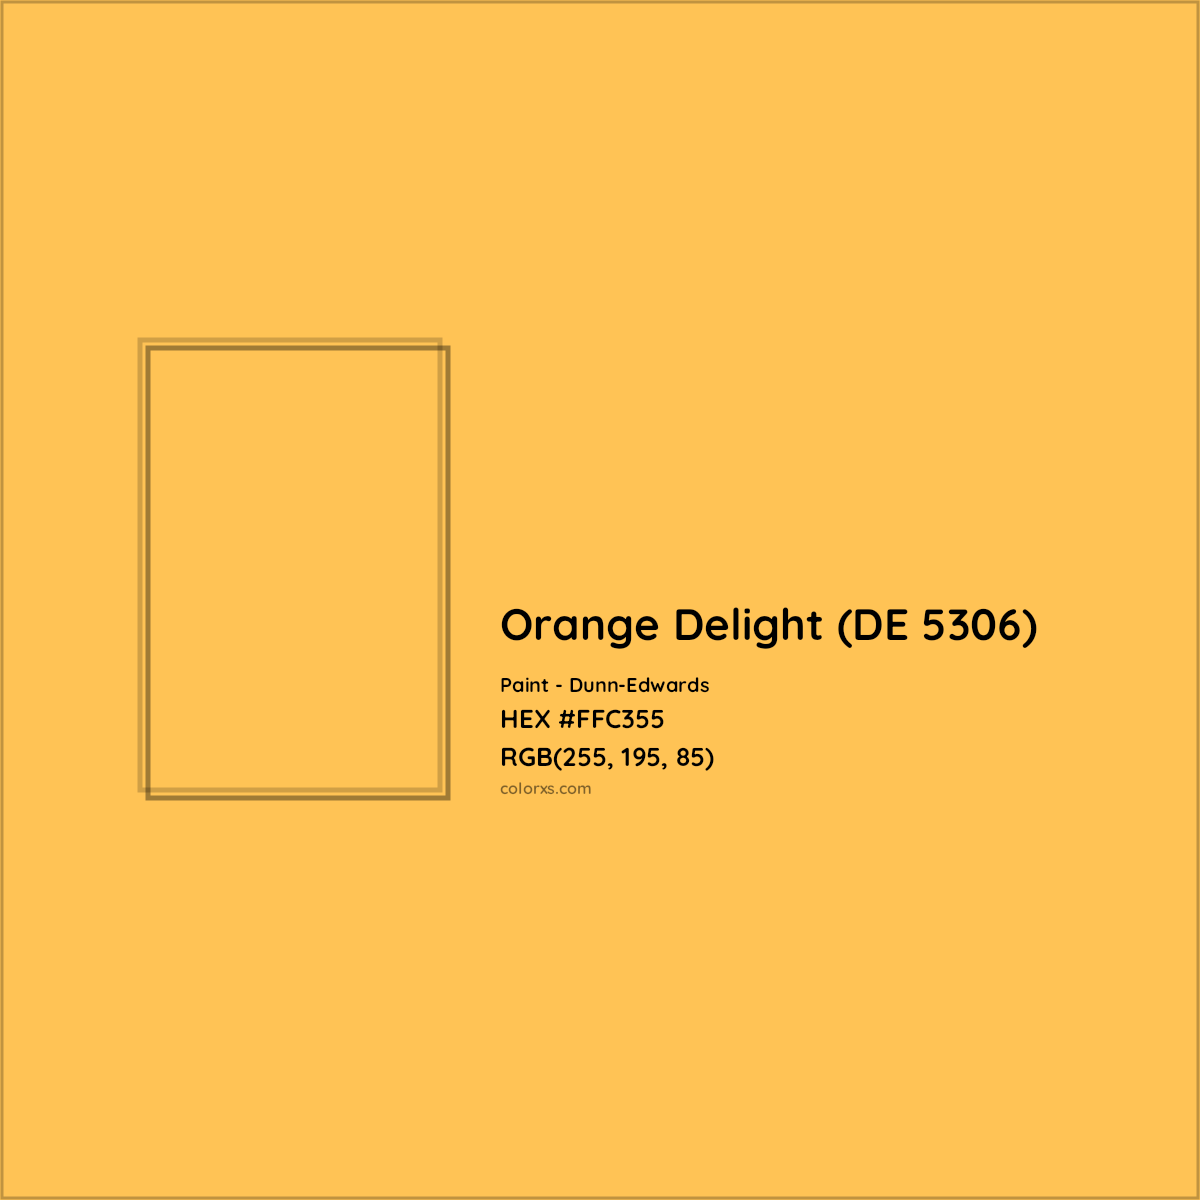 HEX #FFC355 Orange Delight (DE 5306) Paint Dunn-Edwards - Color Code